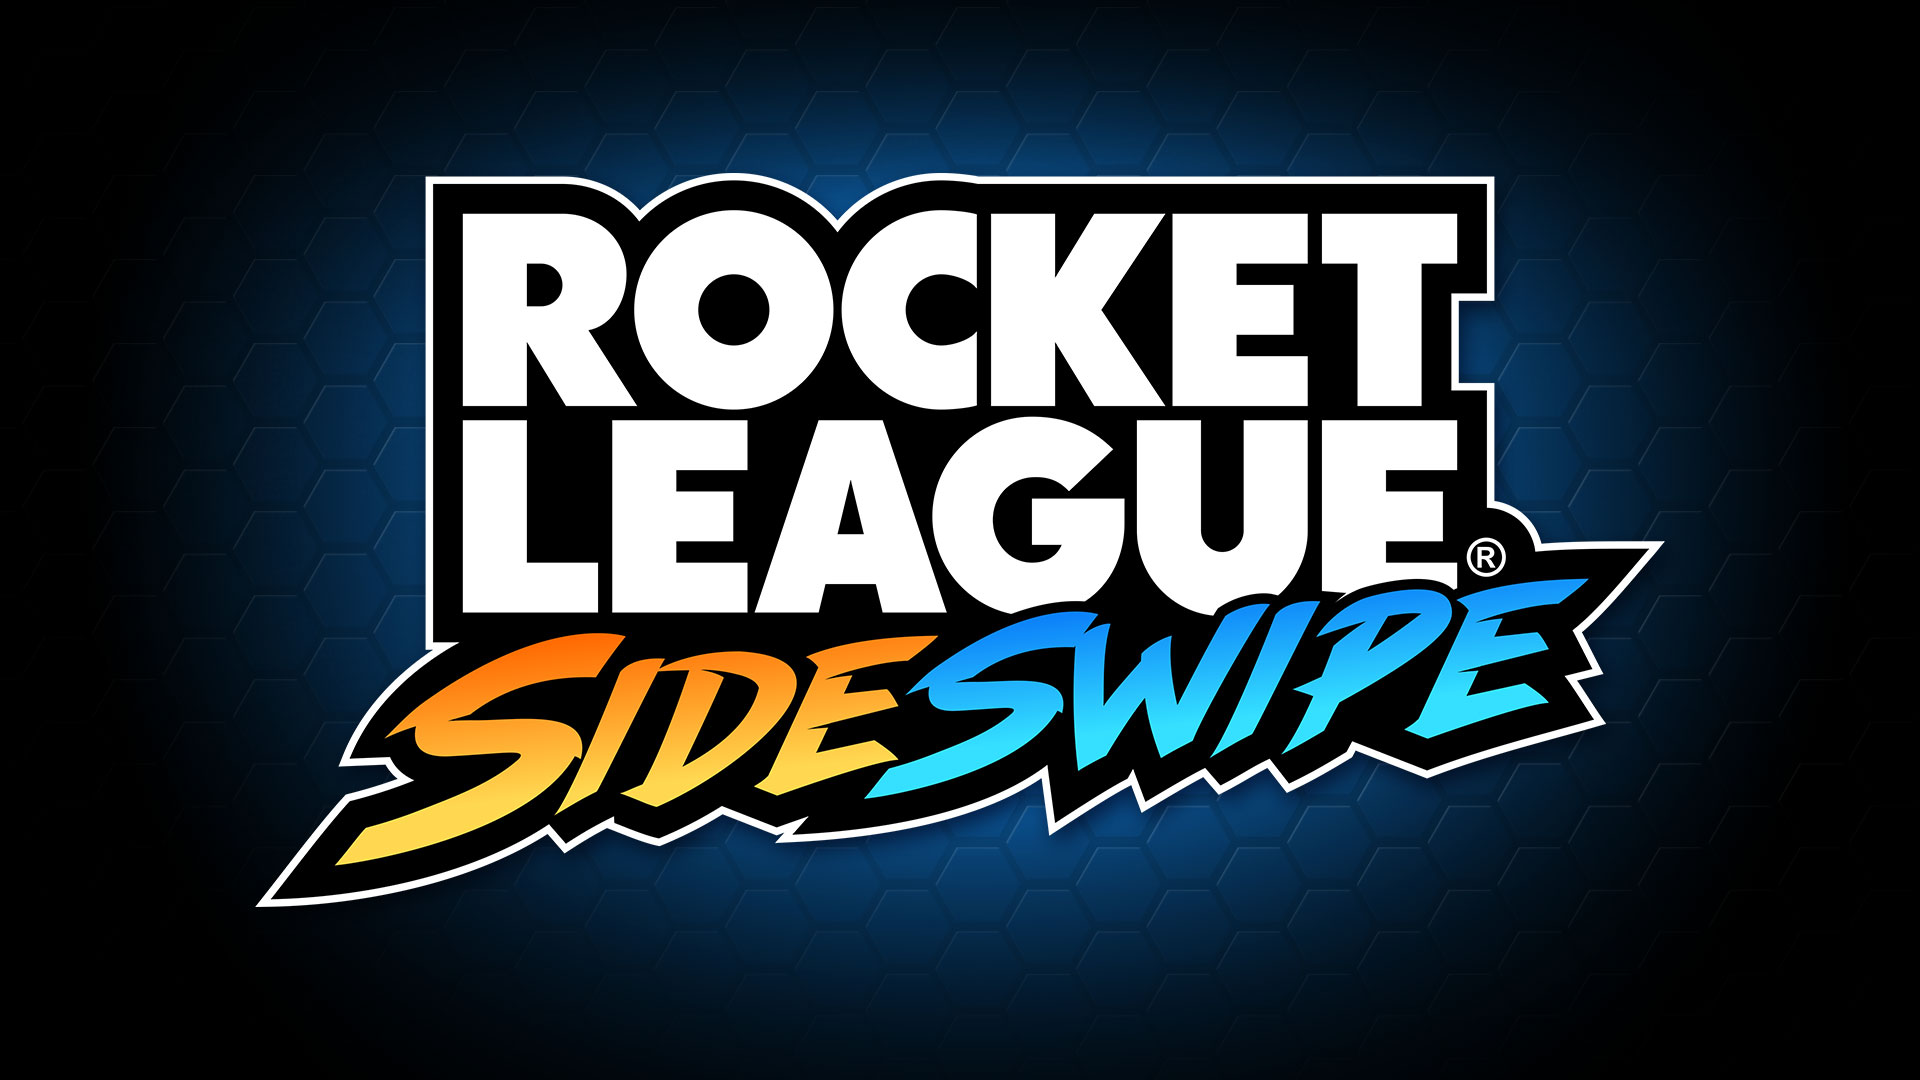 Rocket League SideSwipe